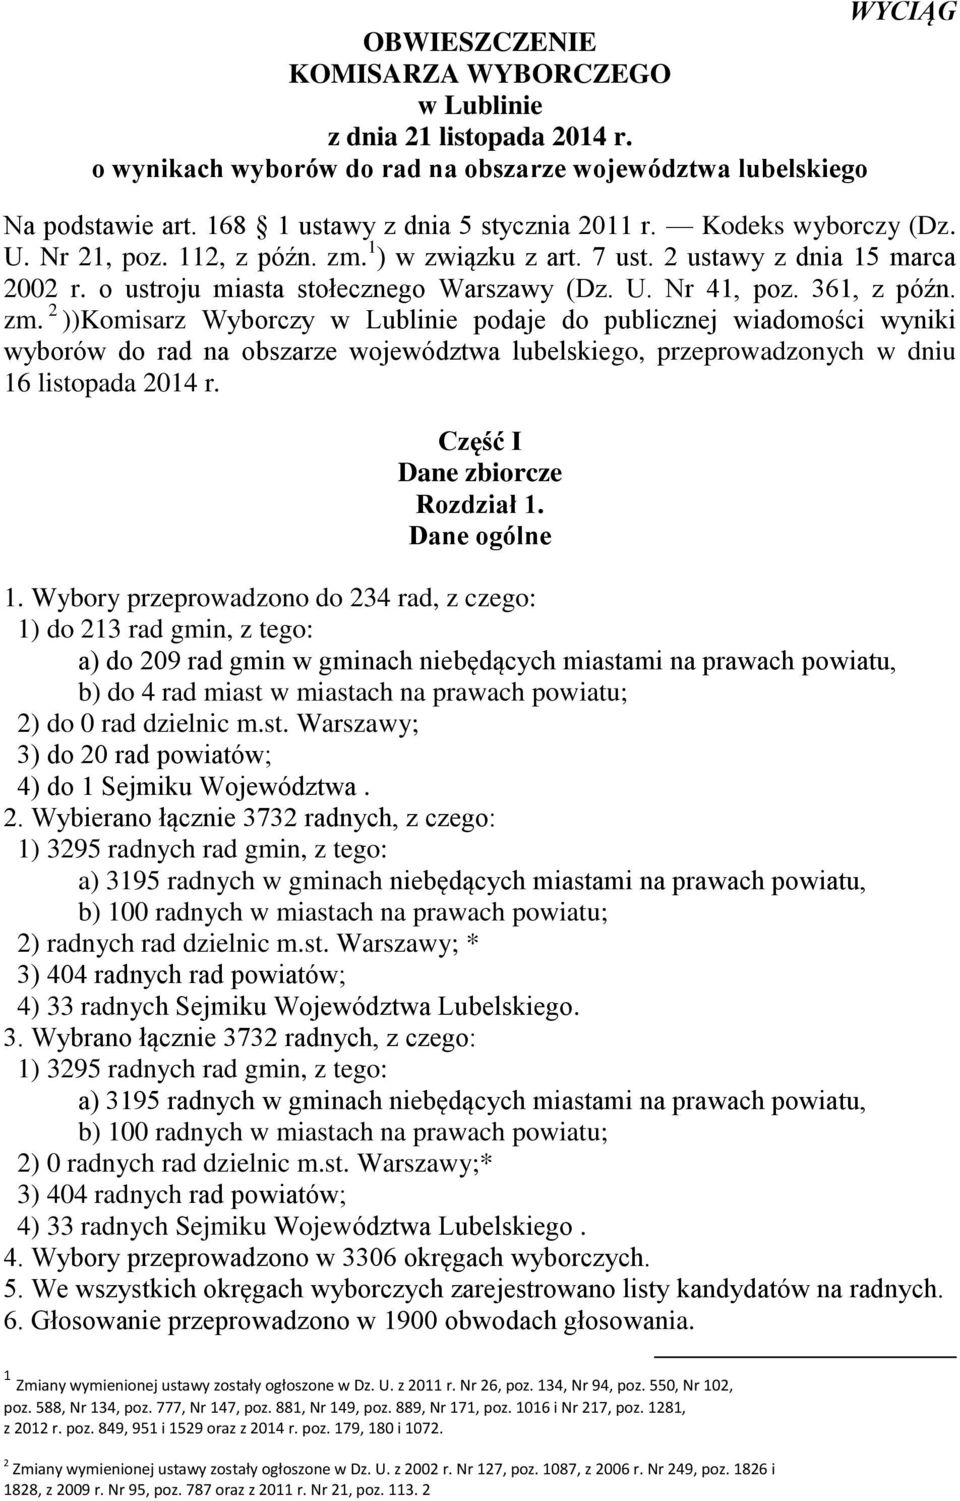 1 ) w związku z art. 7 ust. 2 ustawy z dnia 15 marca 2002 r. o ustroju miasta stołecznego Warszawy (Dz. U. Nr 41, poz. 361, z późn. zm.